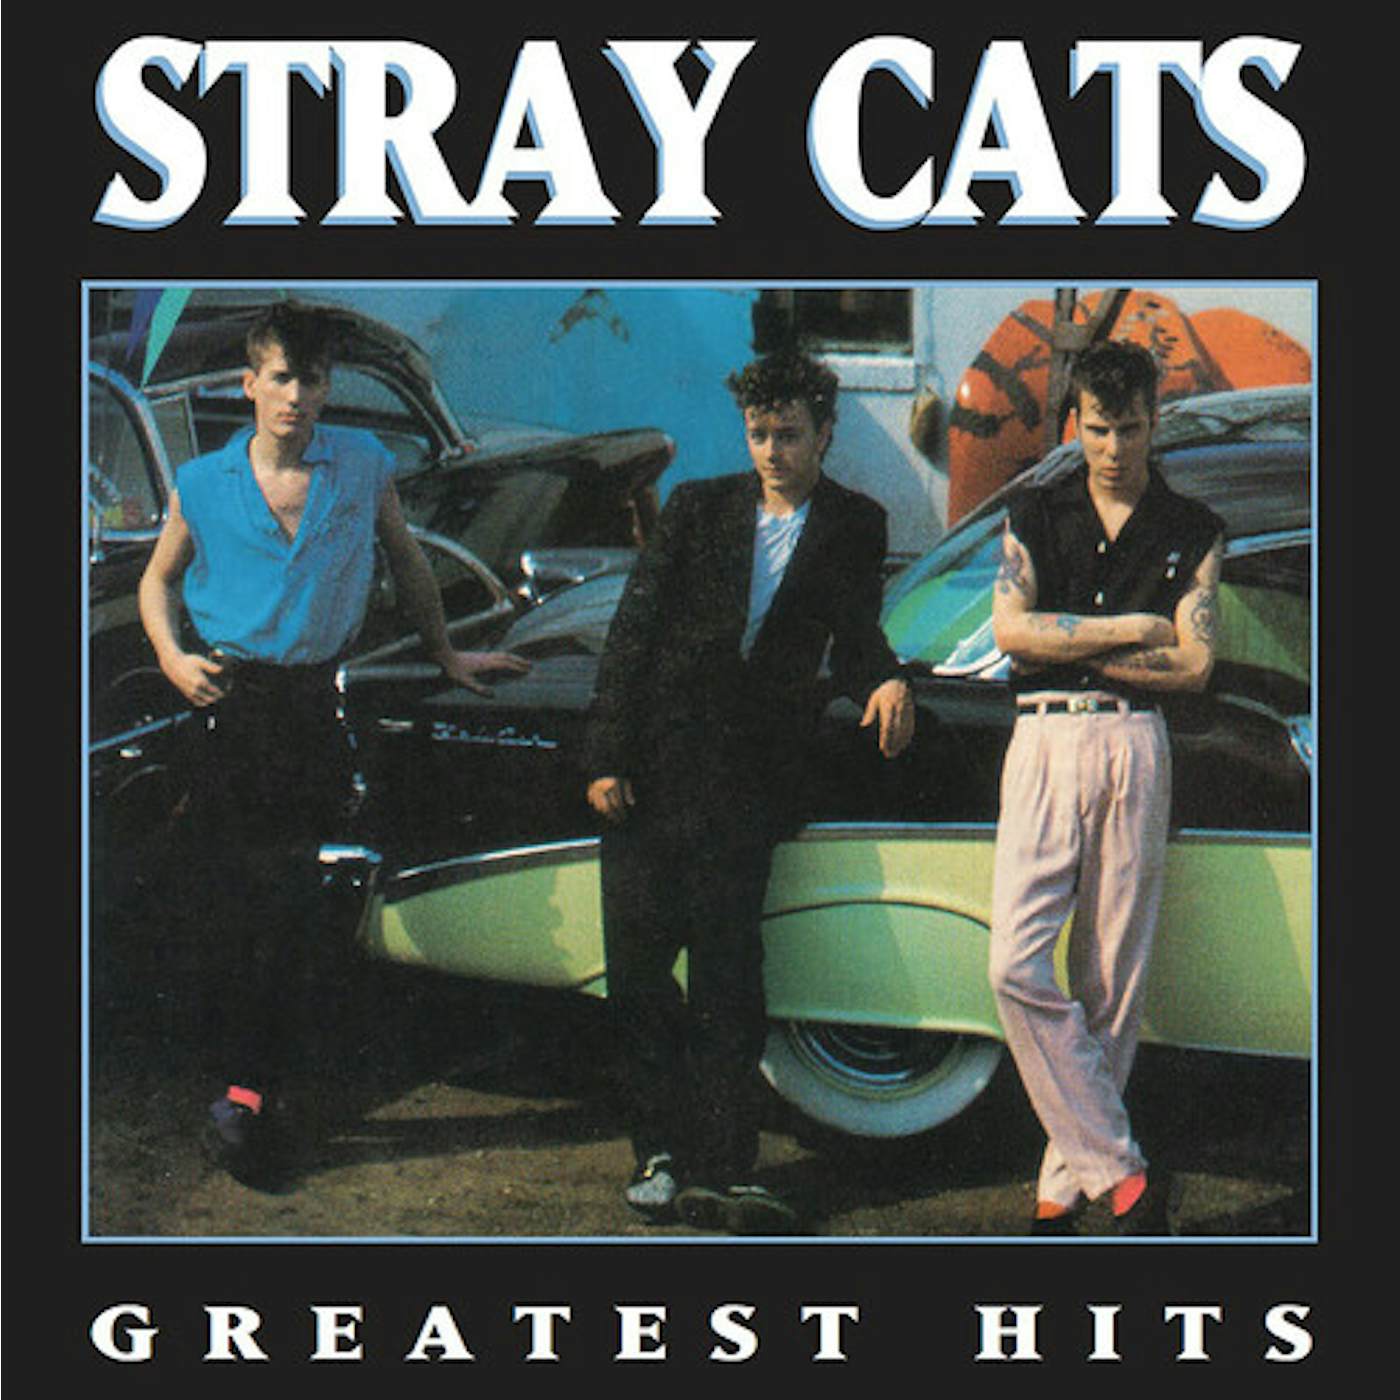 Stray Cats Greatest Hits Vinyl Record